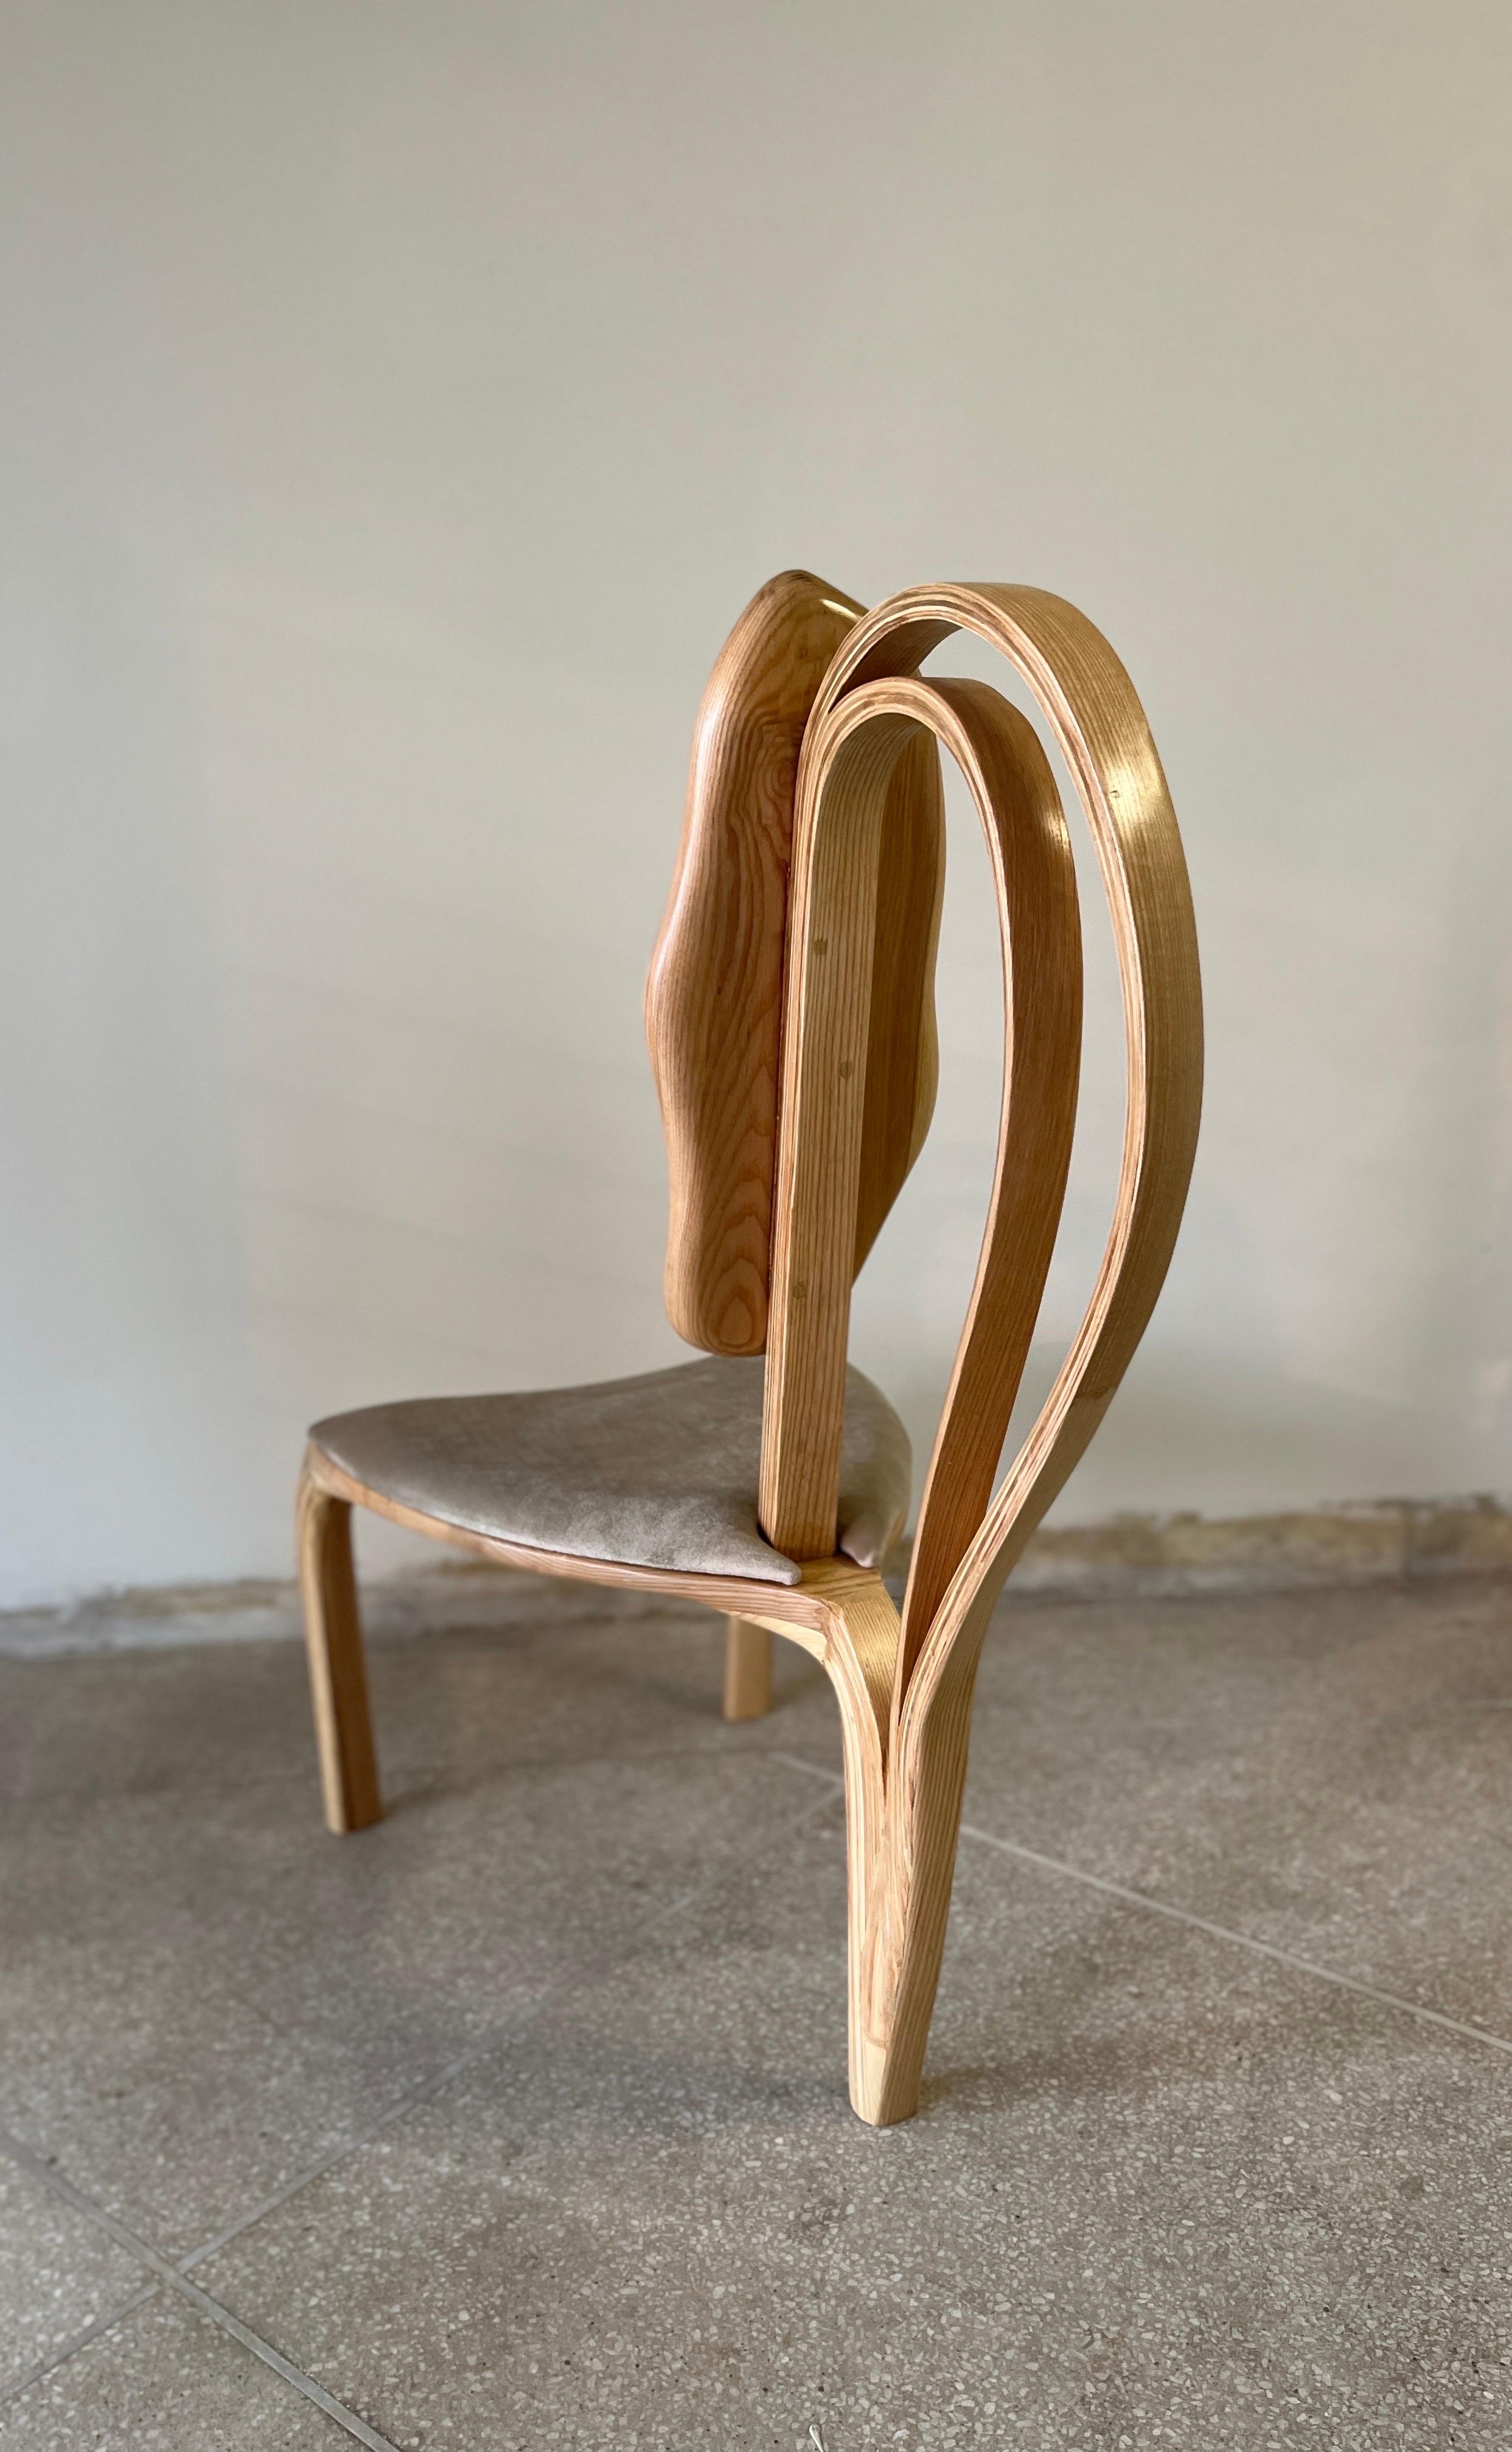 Il s'agit de la chaise de salle à manger n° 1 de la série d'œuvres Fluentum. 

La chaise de salle à manger n° 1  a un design de forme libre ; le bois se plie et se courbe avec de belles coulées pour créer le design. Les détails artisanaux de la